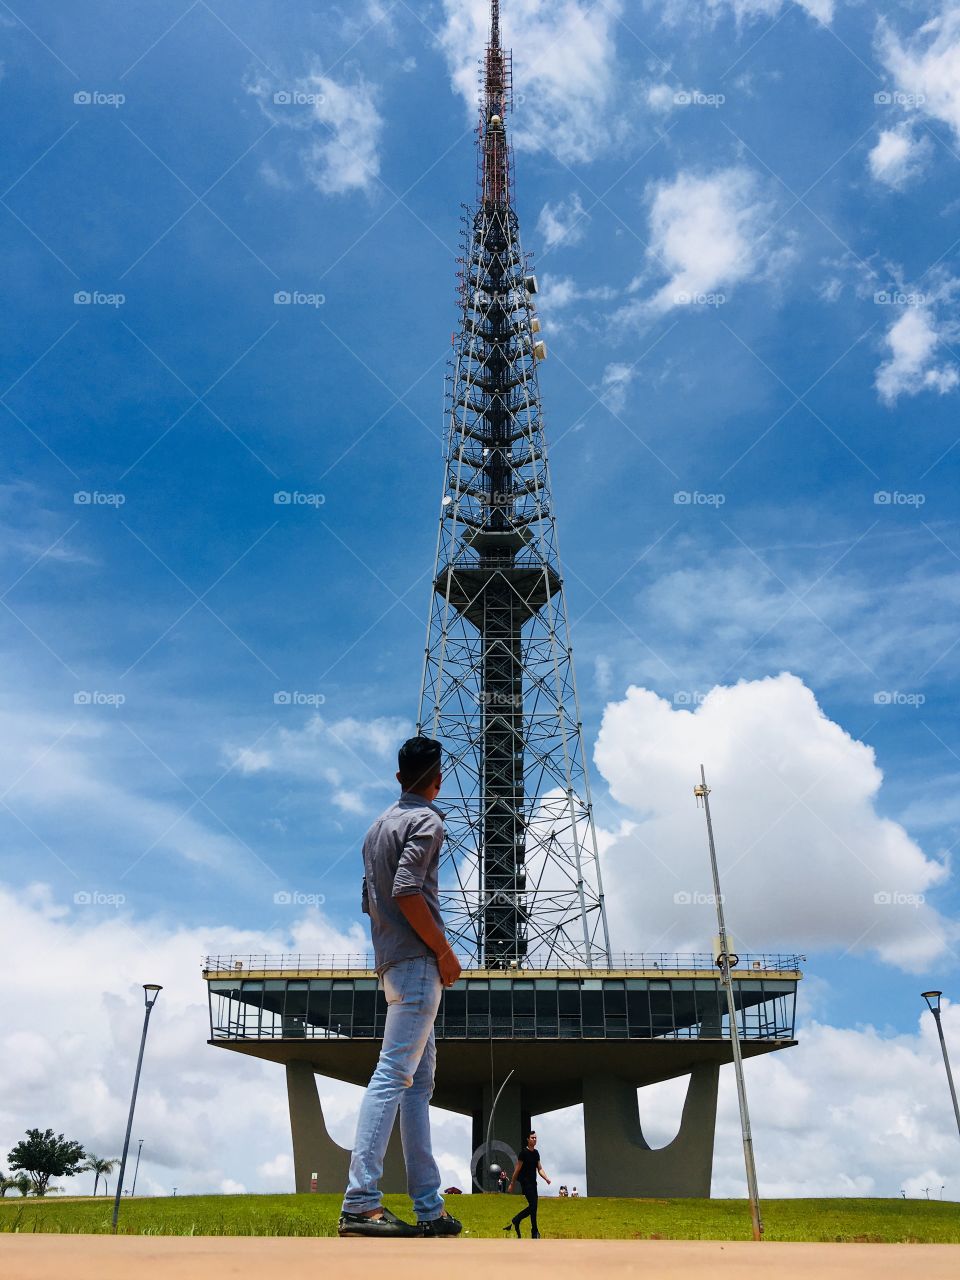 Torre de TV-Brasilia-Brazil.